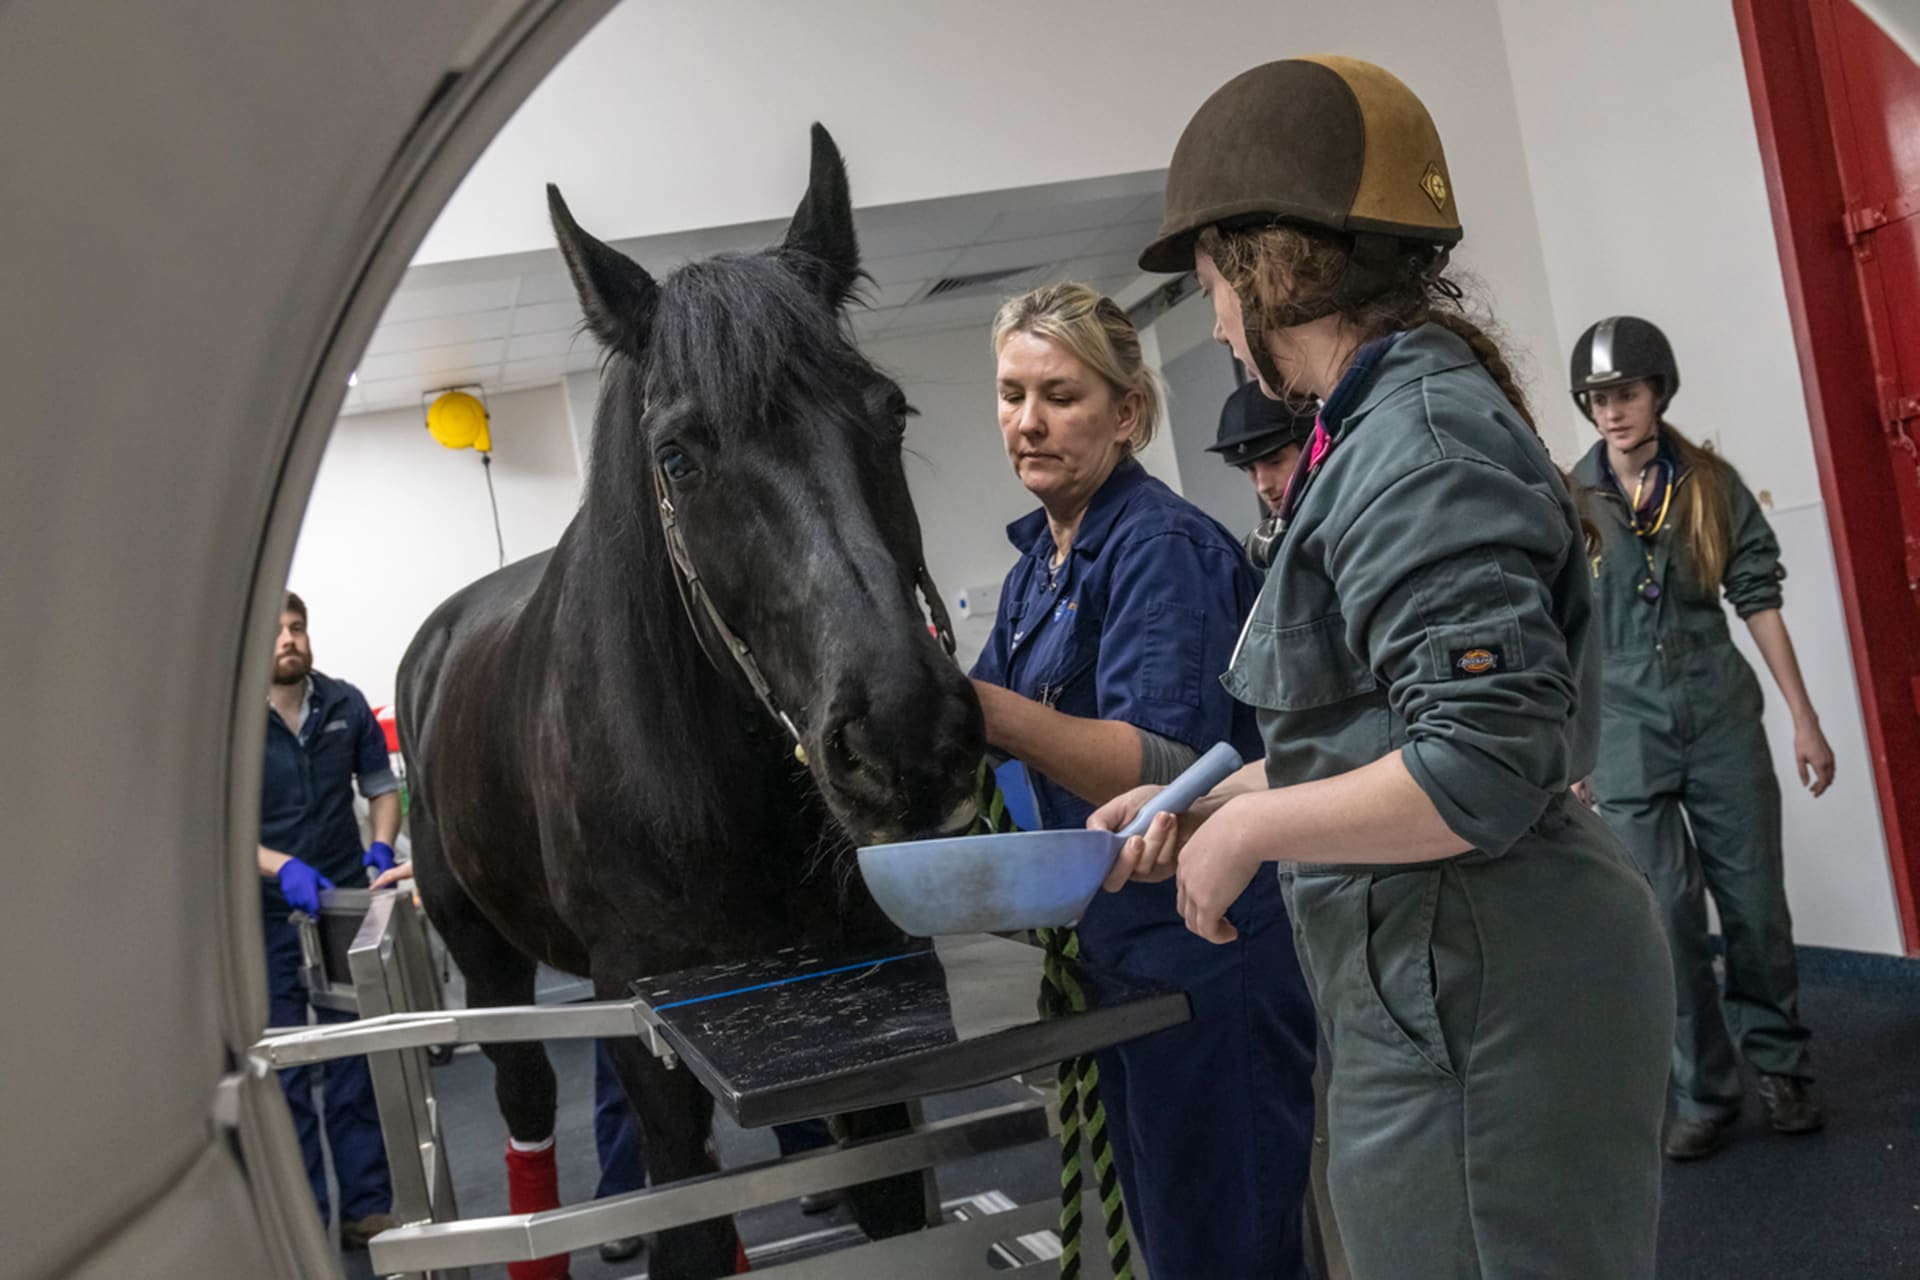 Horse examined at leahurst campus